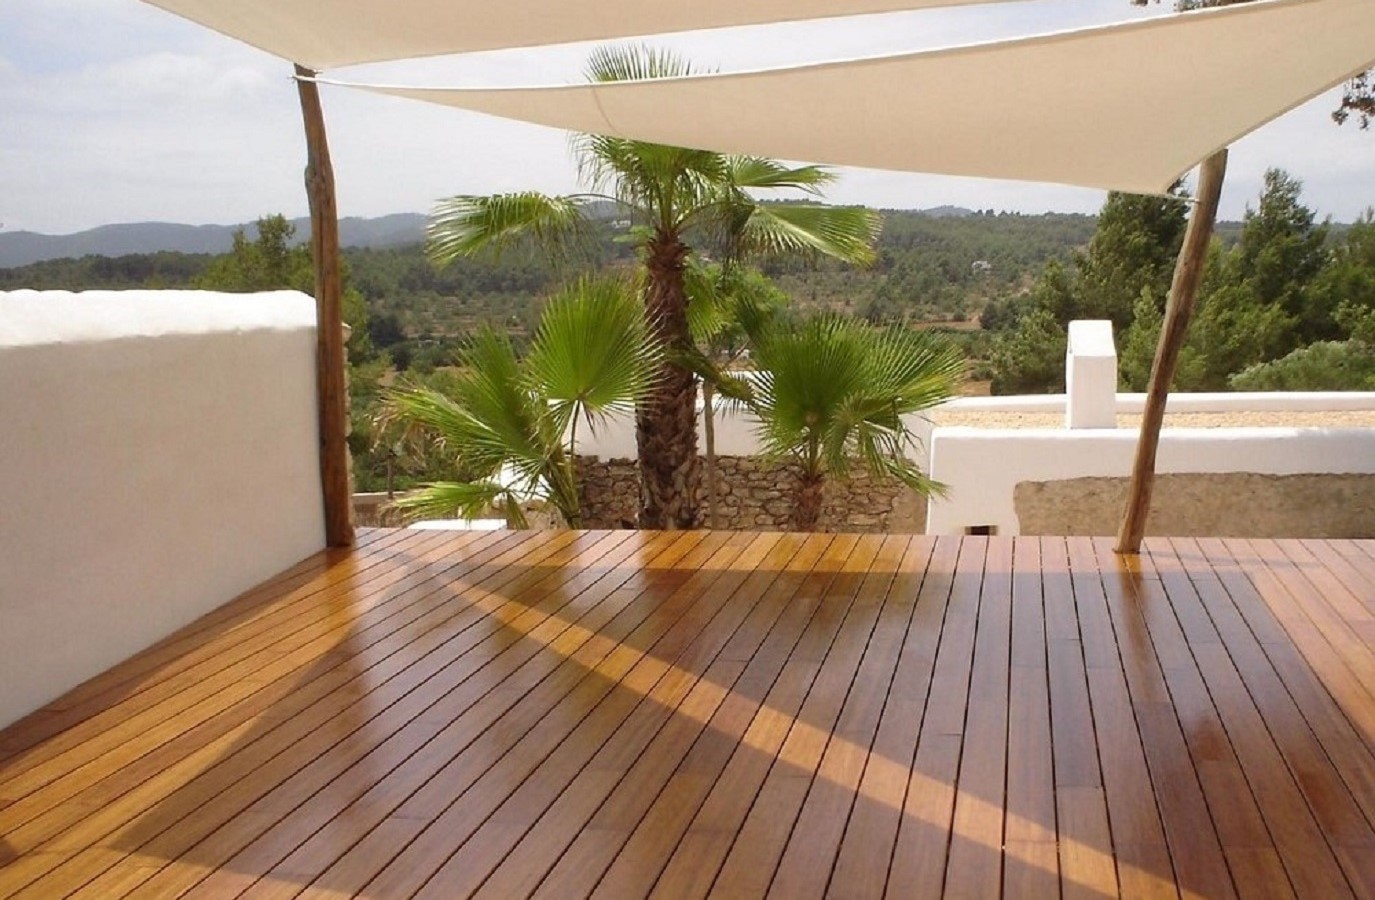 Proyectos Más Madera: Instalación de madera de Bambú en jardín particular en Marbella